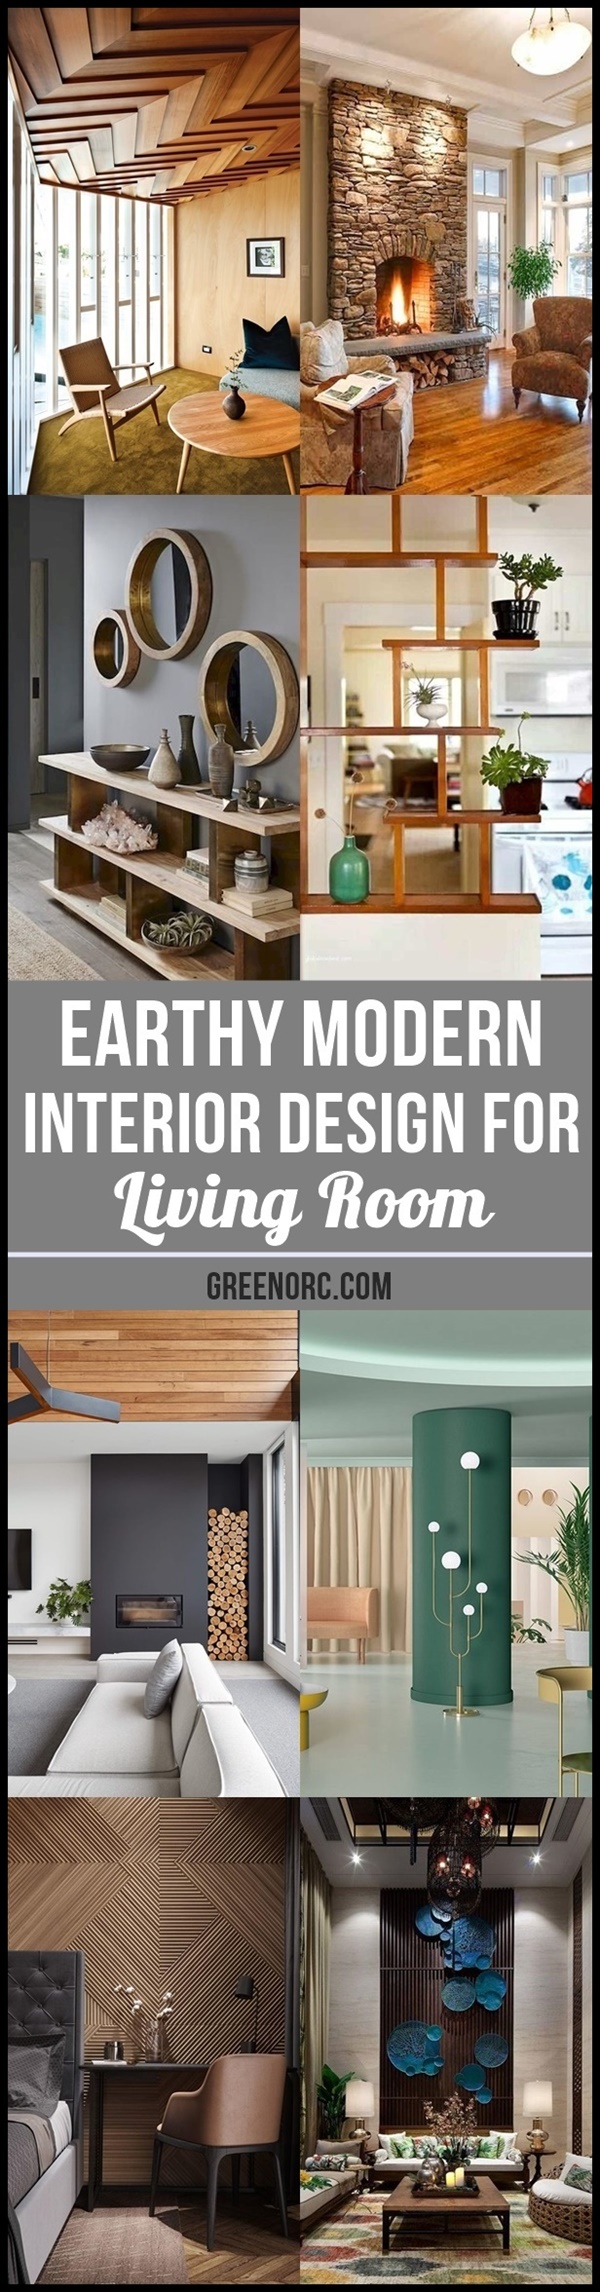 Earthy Modern Interior Design for Living Room